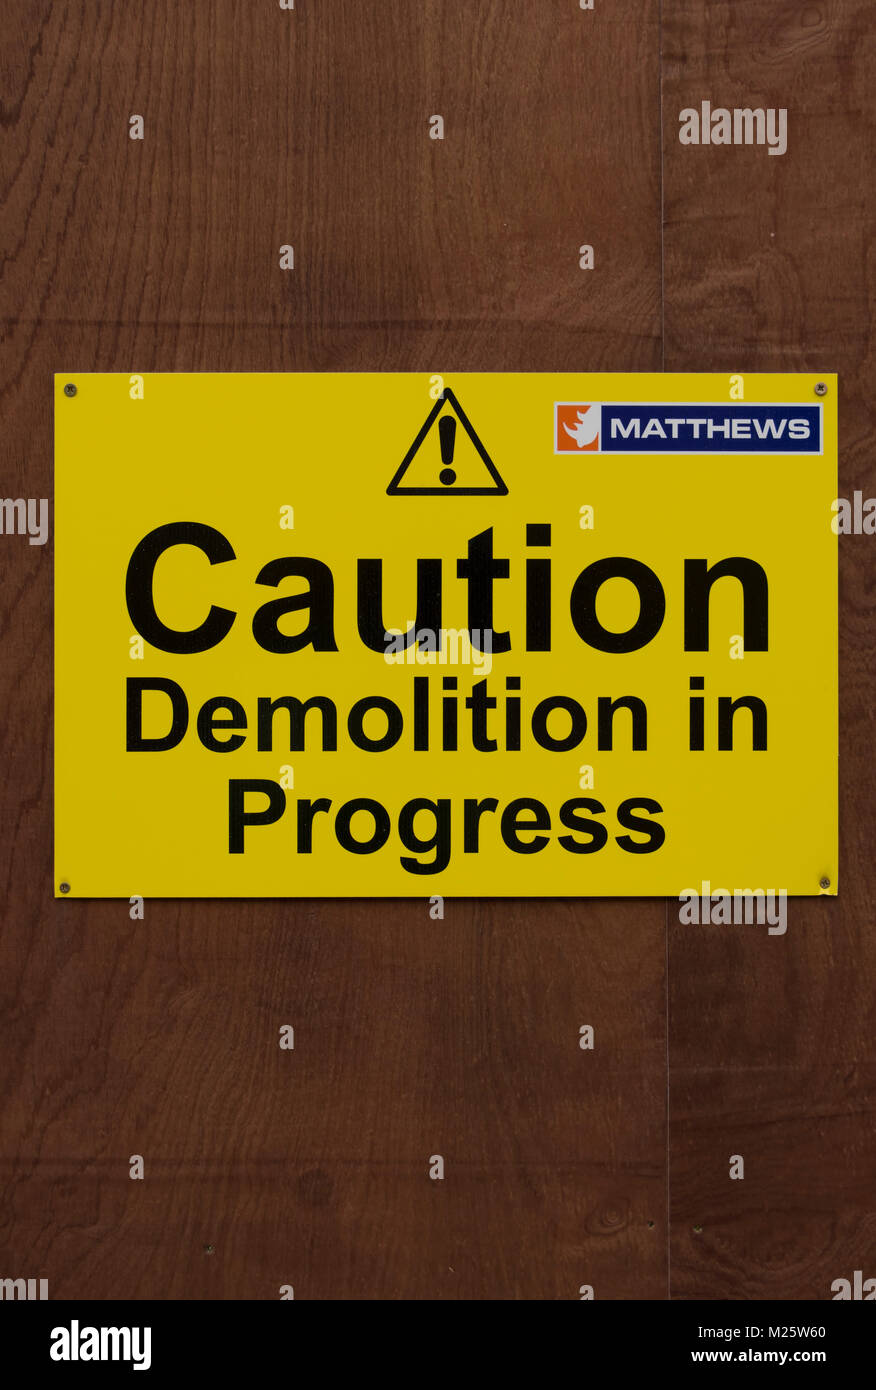 Vorsicht Abriss im Gange Warnschild, mit Ausrufezeichen und Logo der Demolition Company matthews Stockfoto